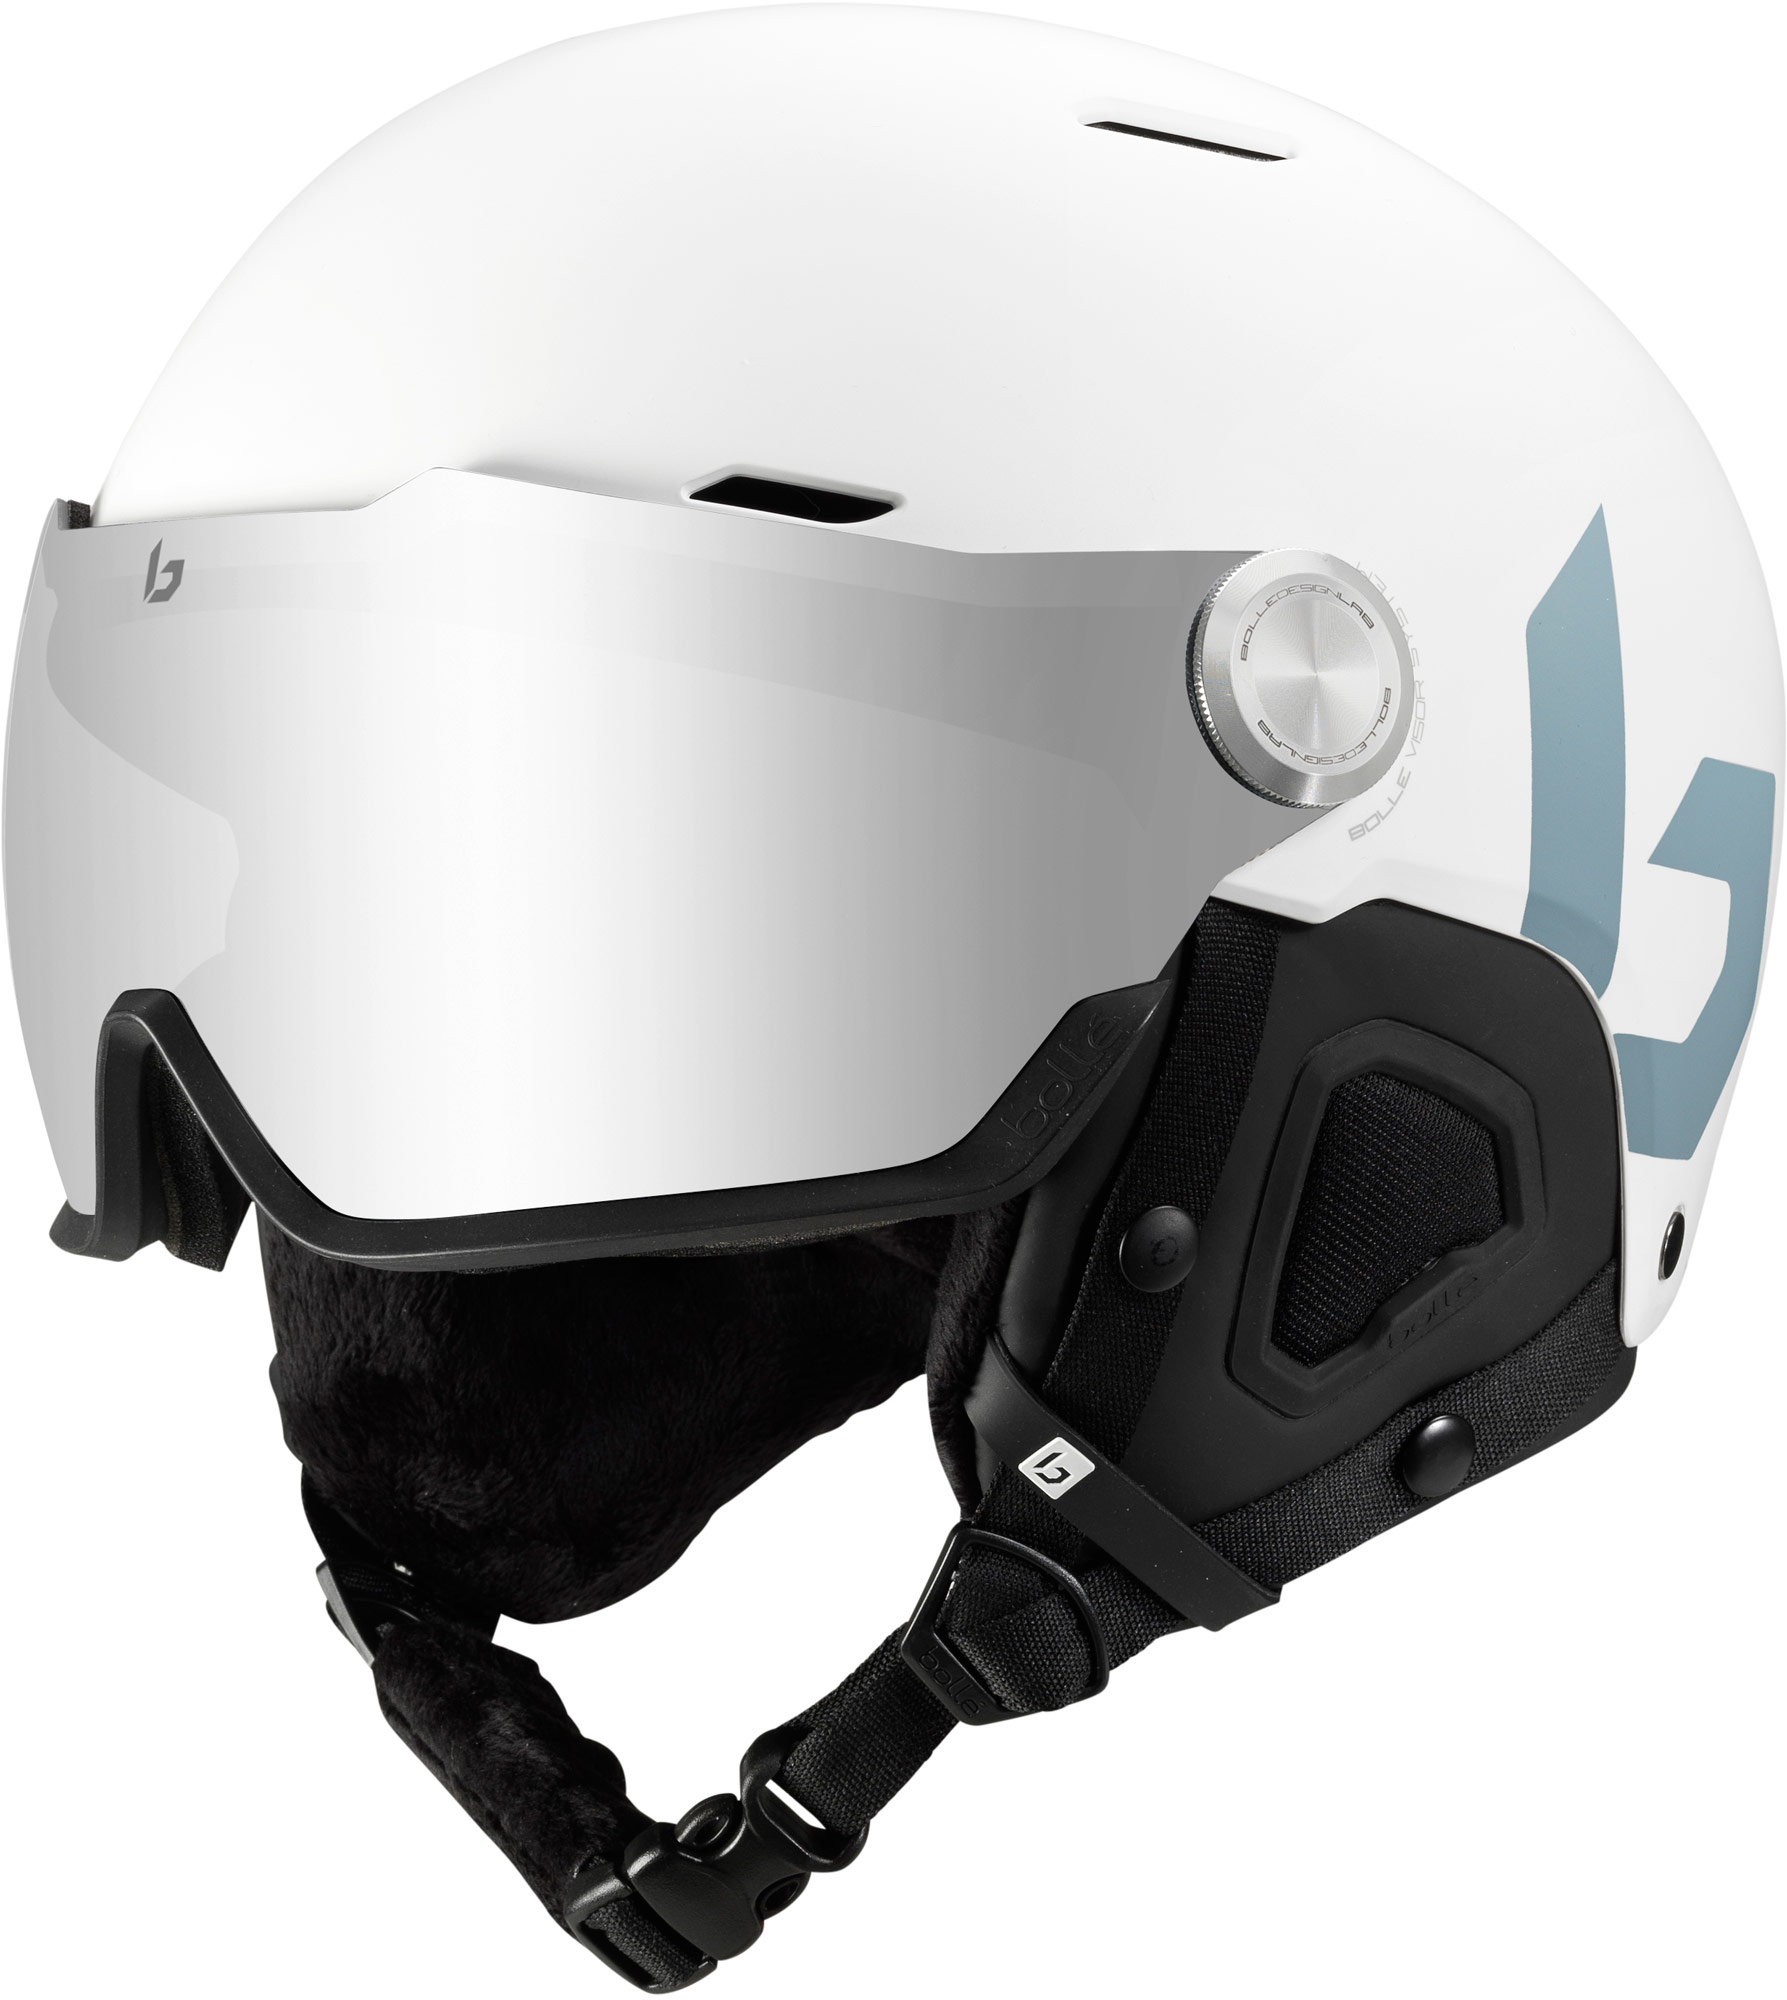 Ski helmet with visor